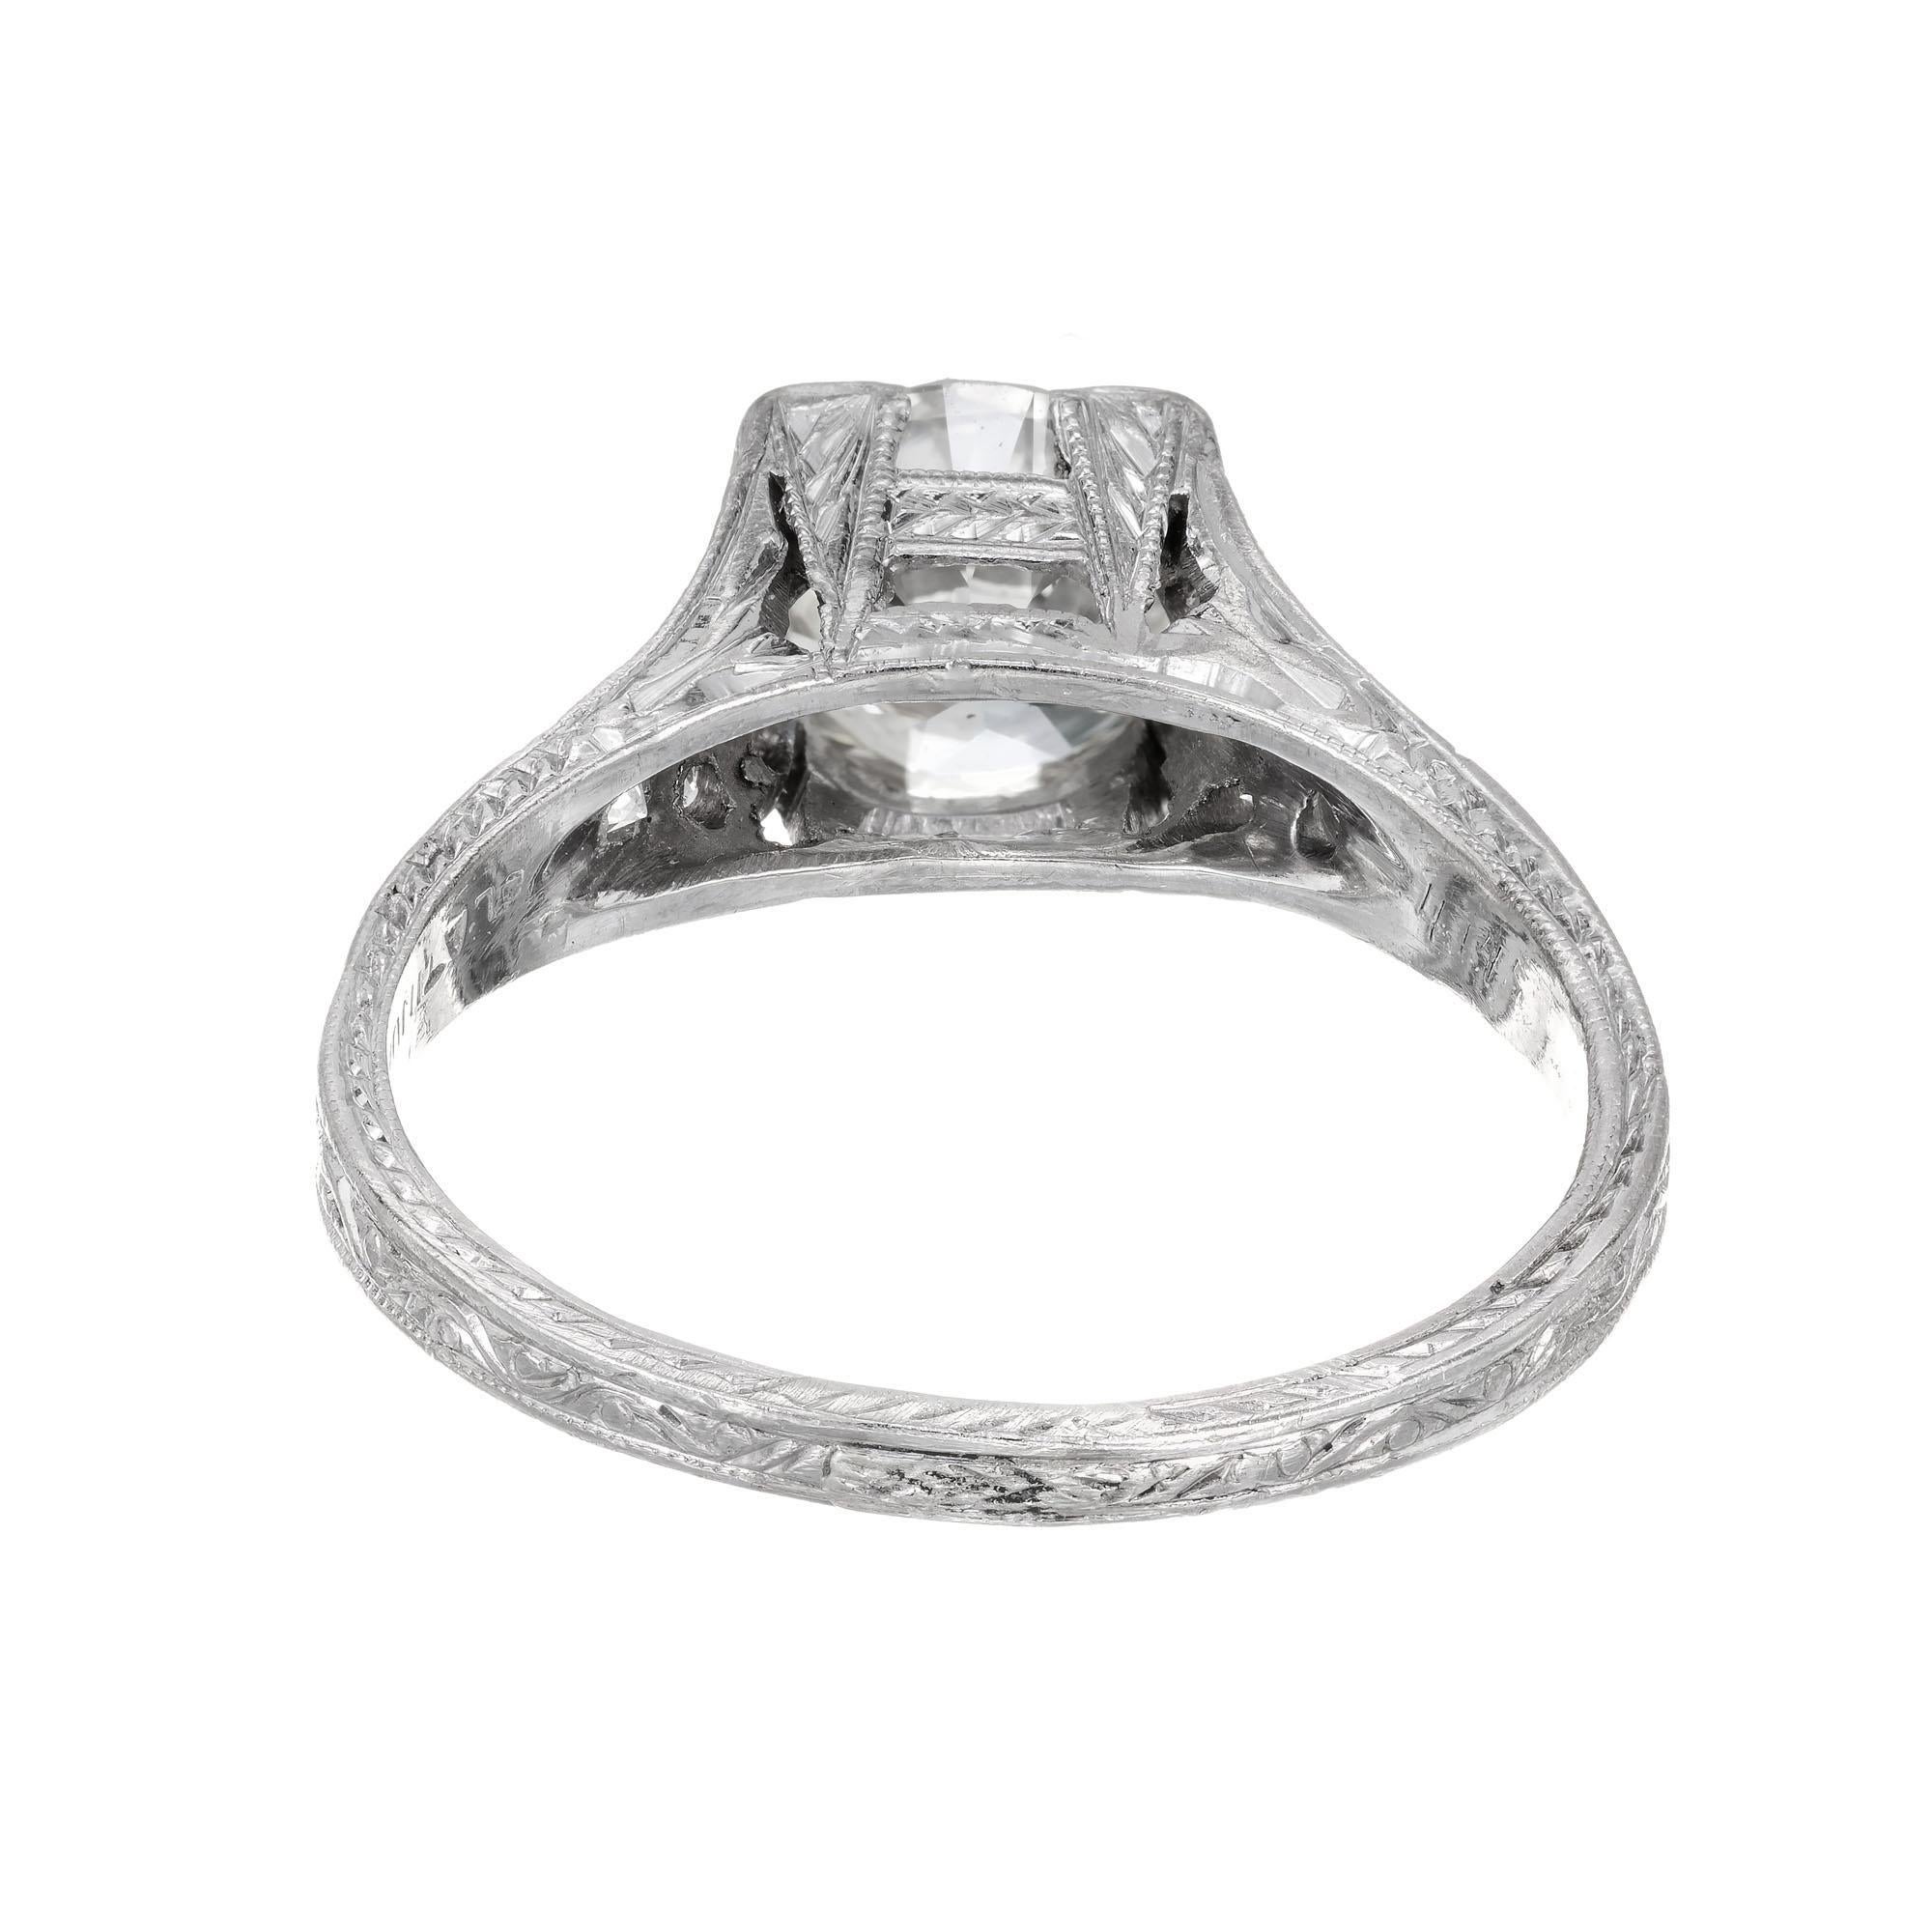 Round Cut 1.34 Carat Diamond Art Deco Platinum Engagement Ring, Circa 1930's For Sale